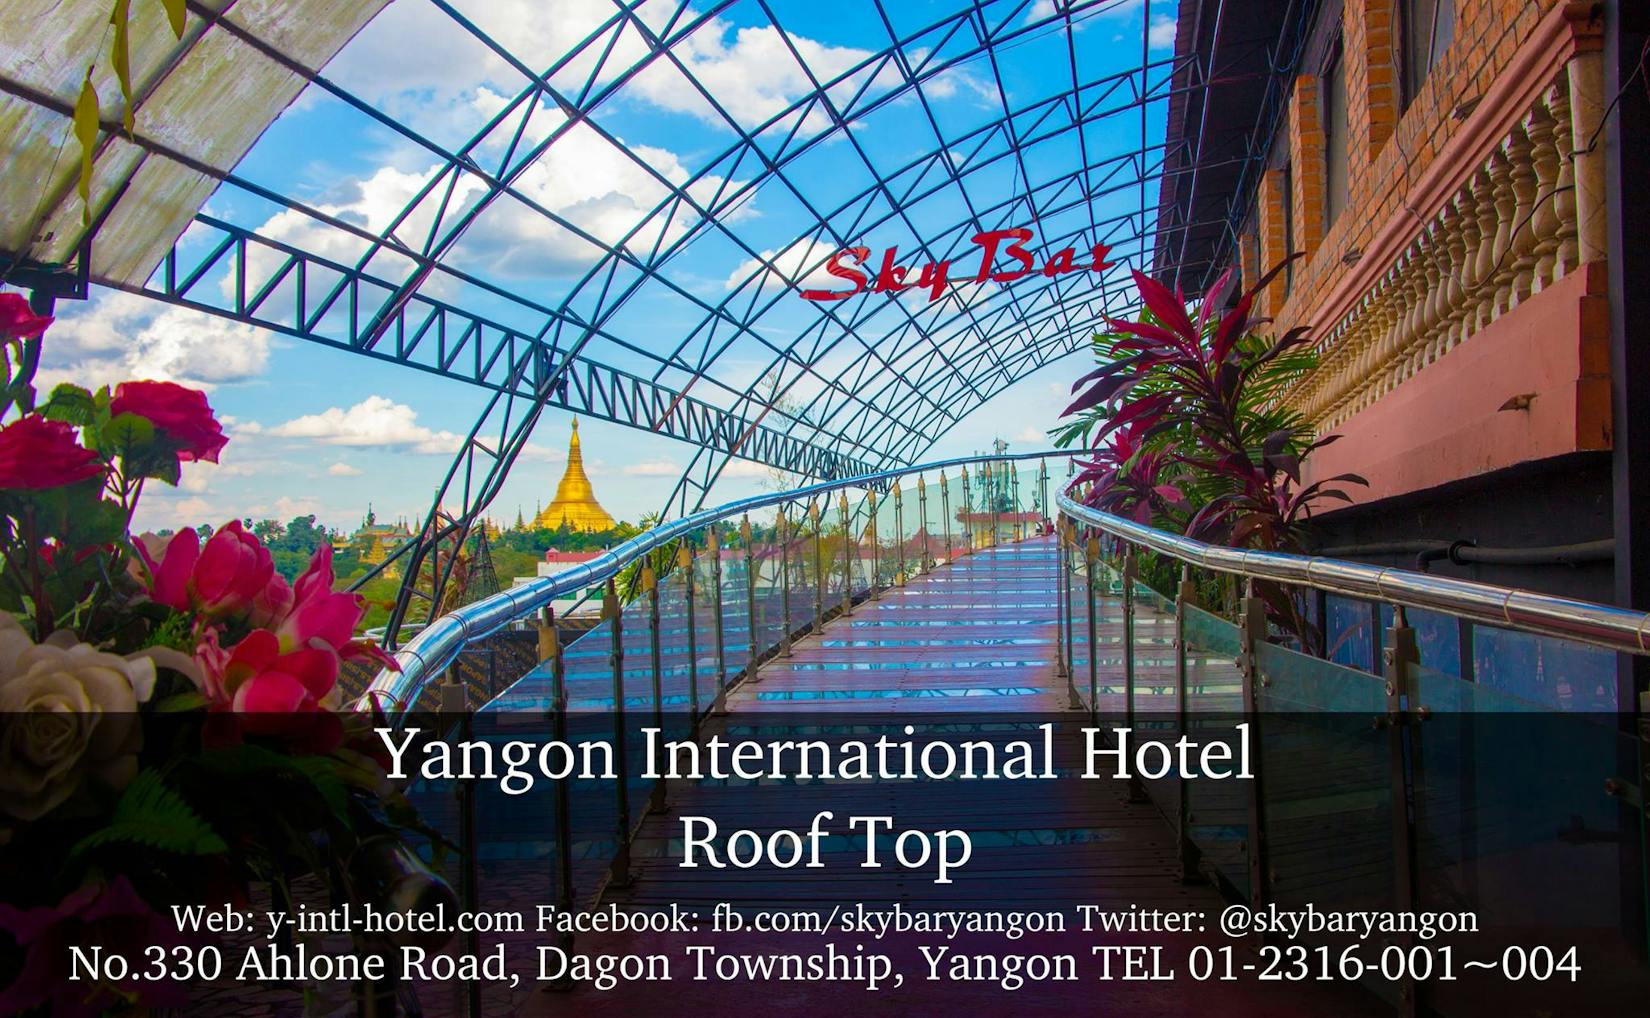 Sky Bar at Yangon International Hotel | yathar